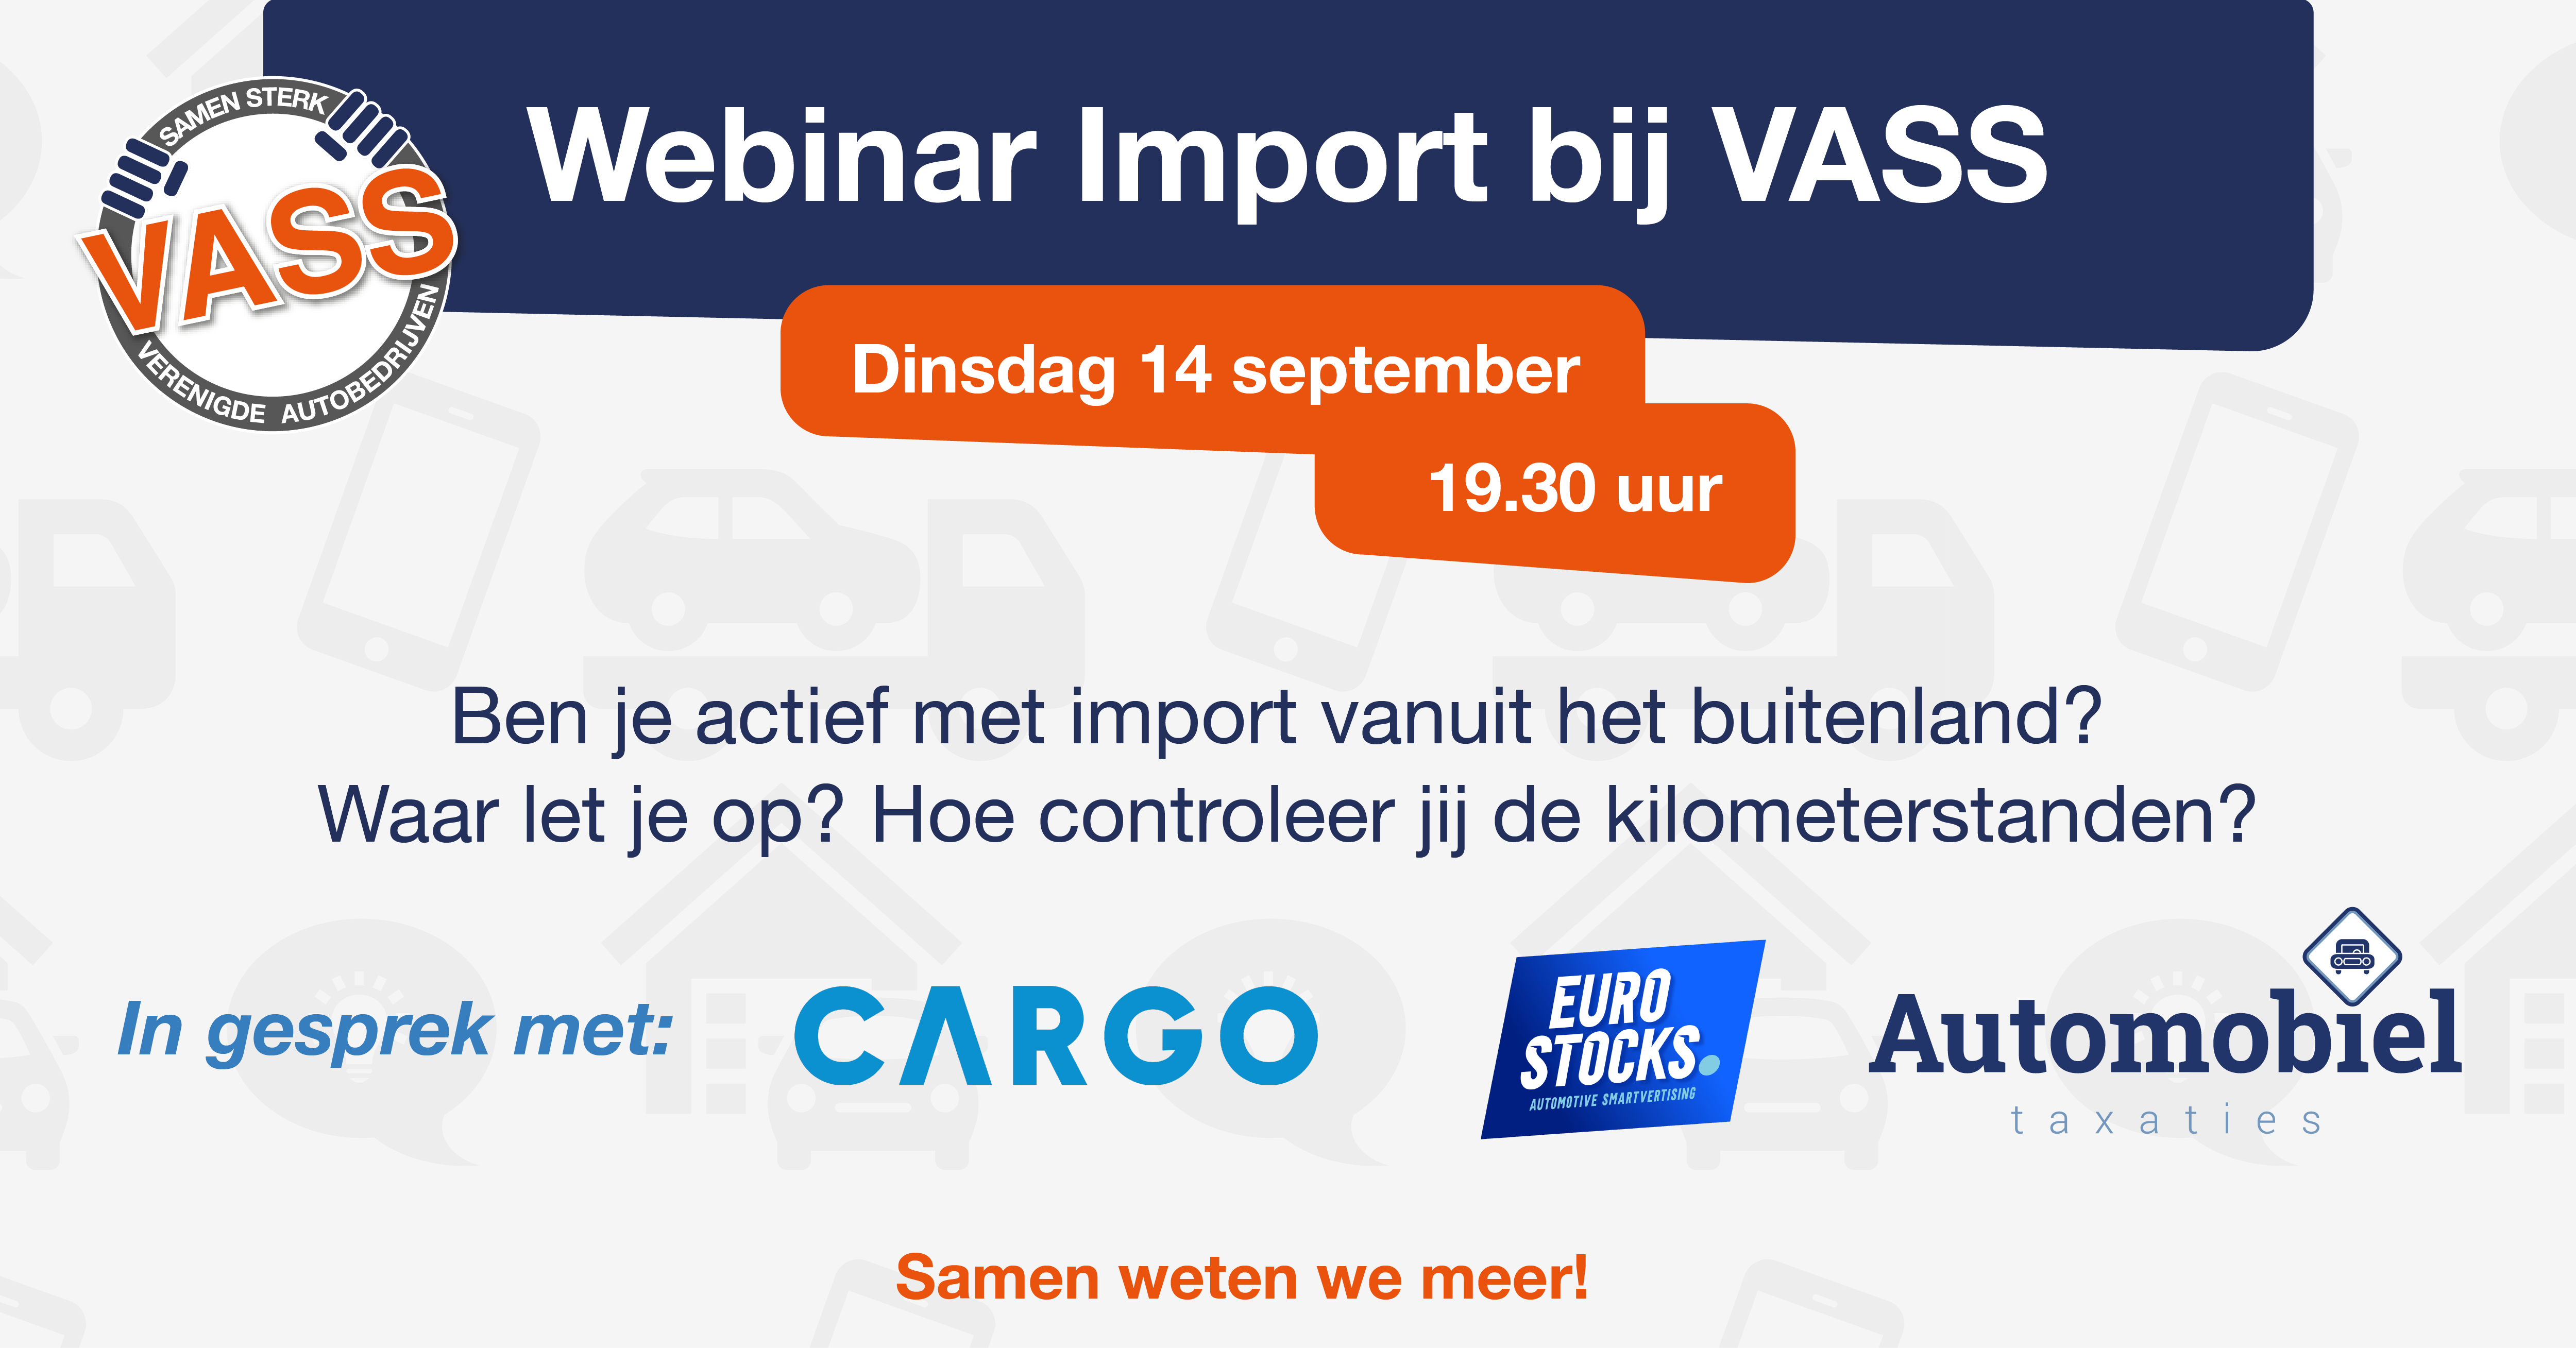 VASS Webinar import met CARGO